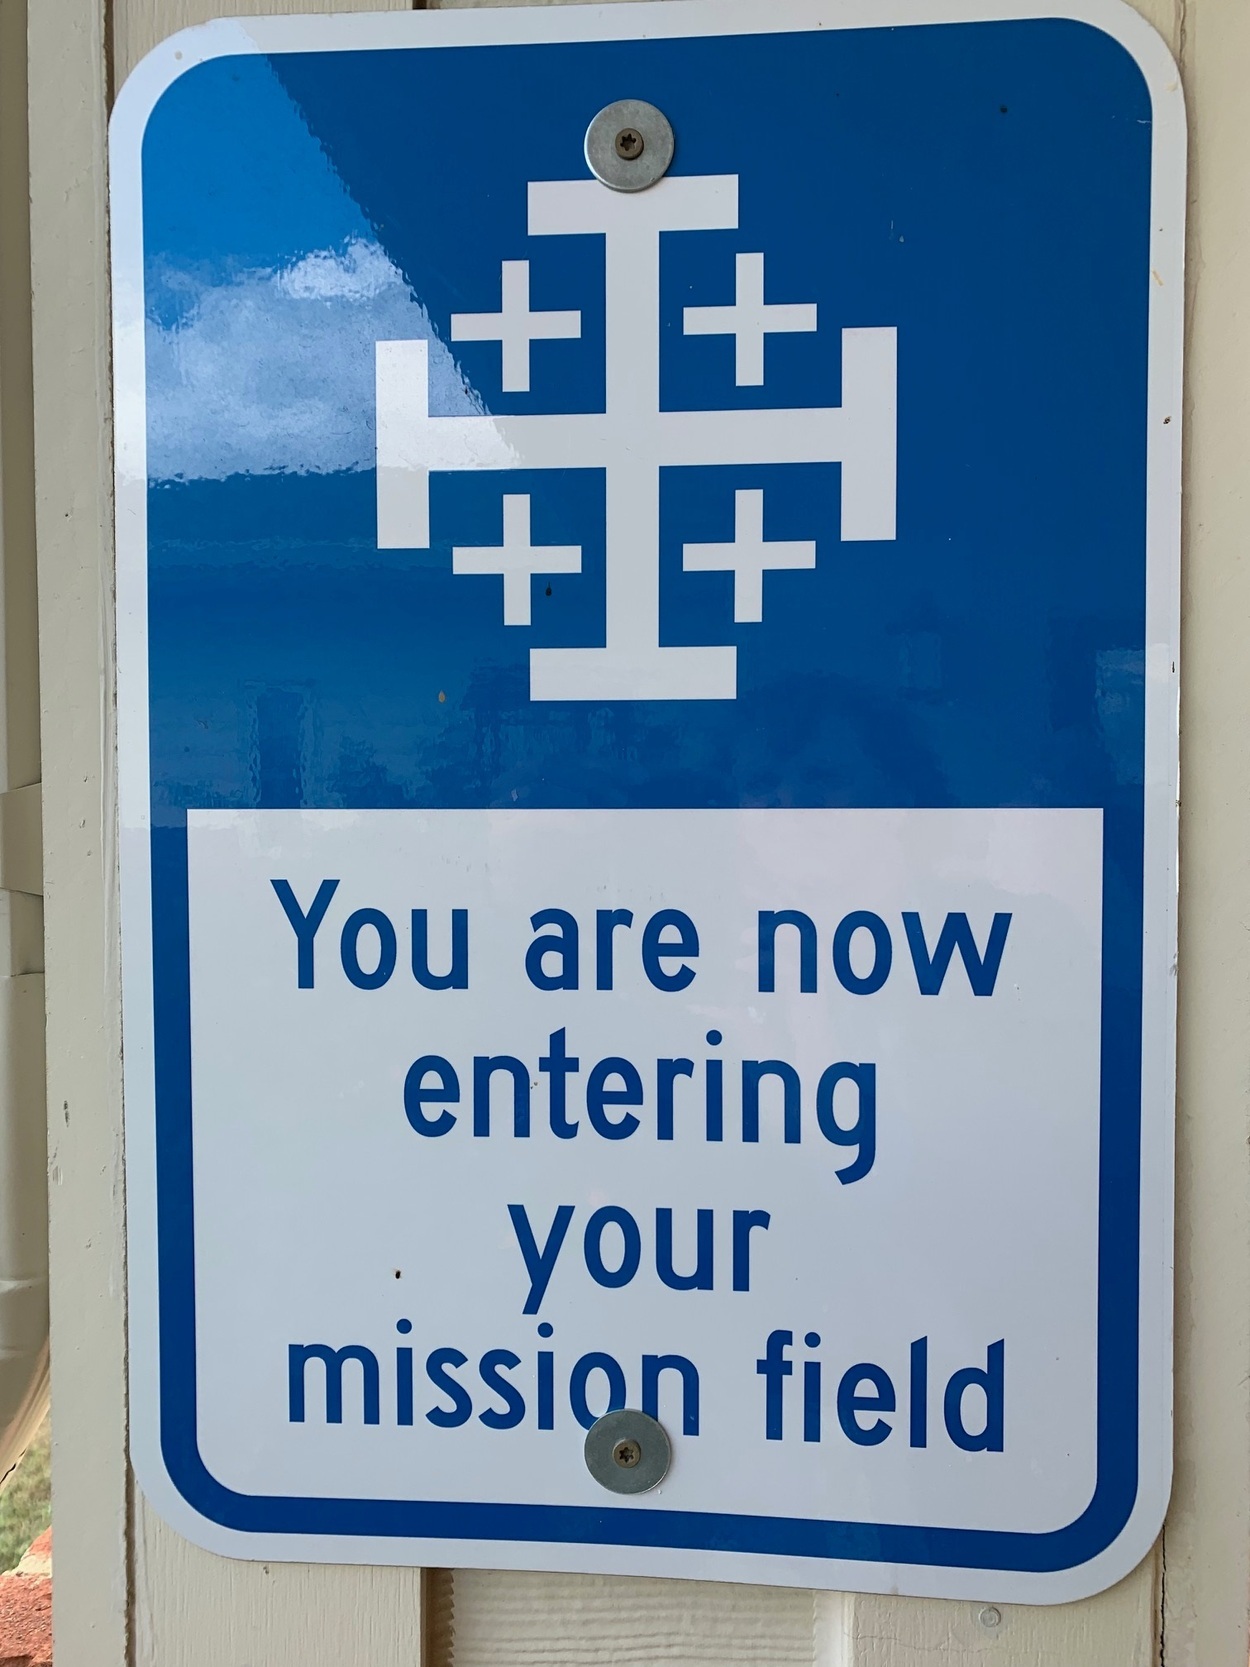 Mission Field